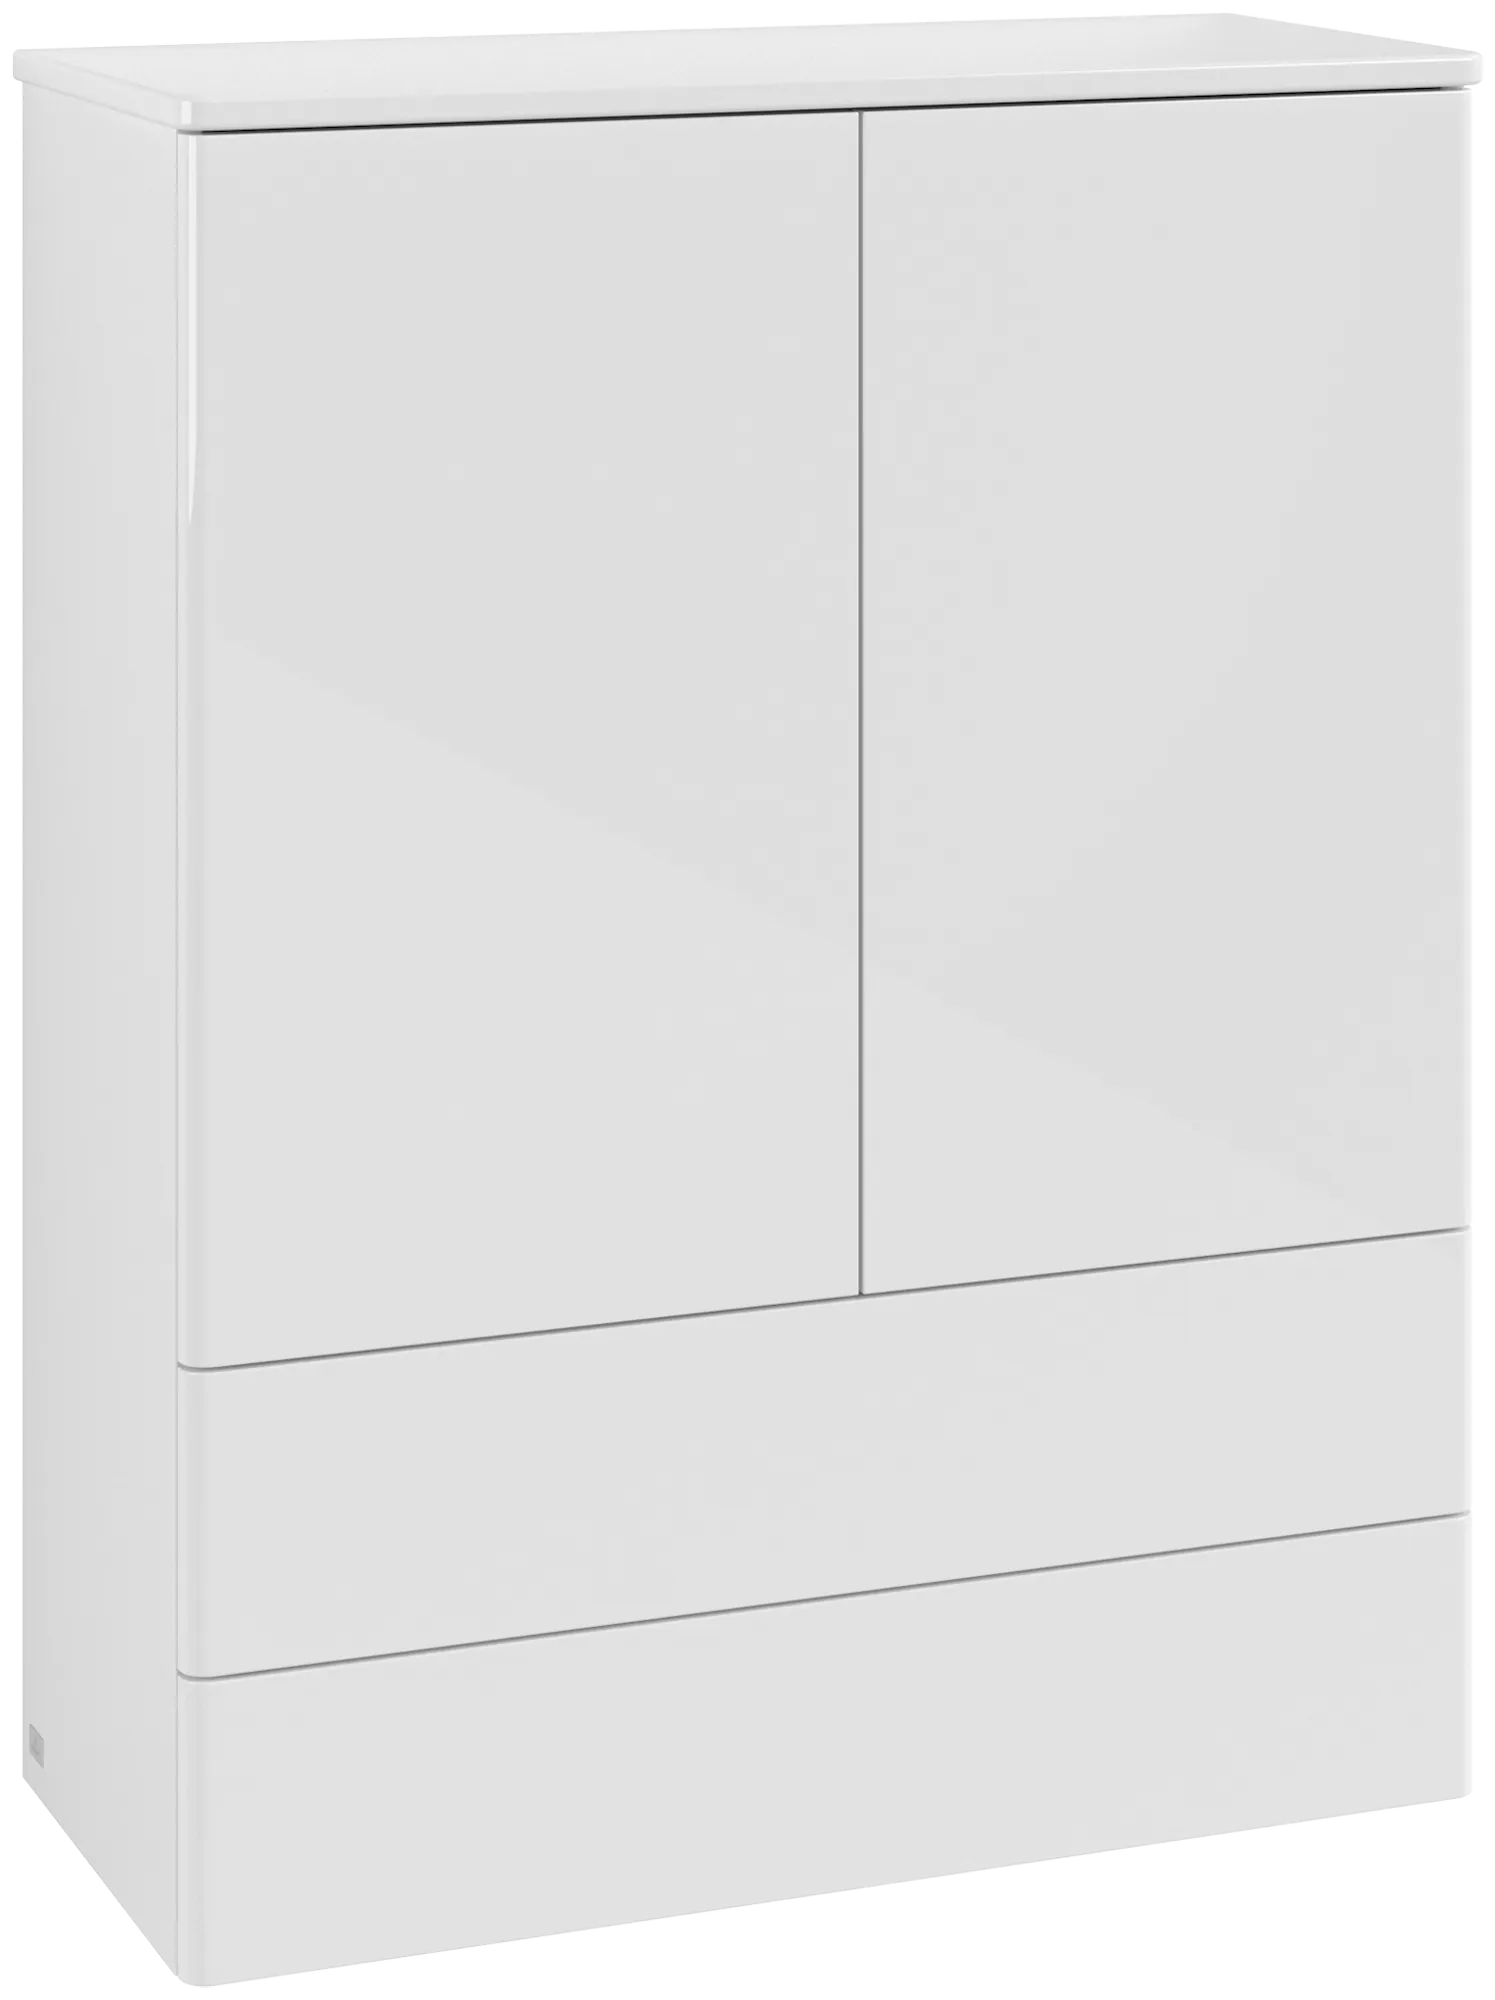 Bild von VILLEROY BOCH Antao Highboard, mit Beleuchtung, 2 Türen, 814 x 1039 x 356 mm, Front ohne Struktur, Glossy White Lacquer / Glossy White Lacquer #L47000GF